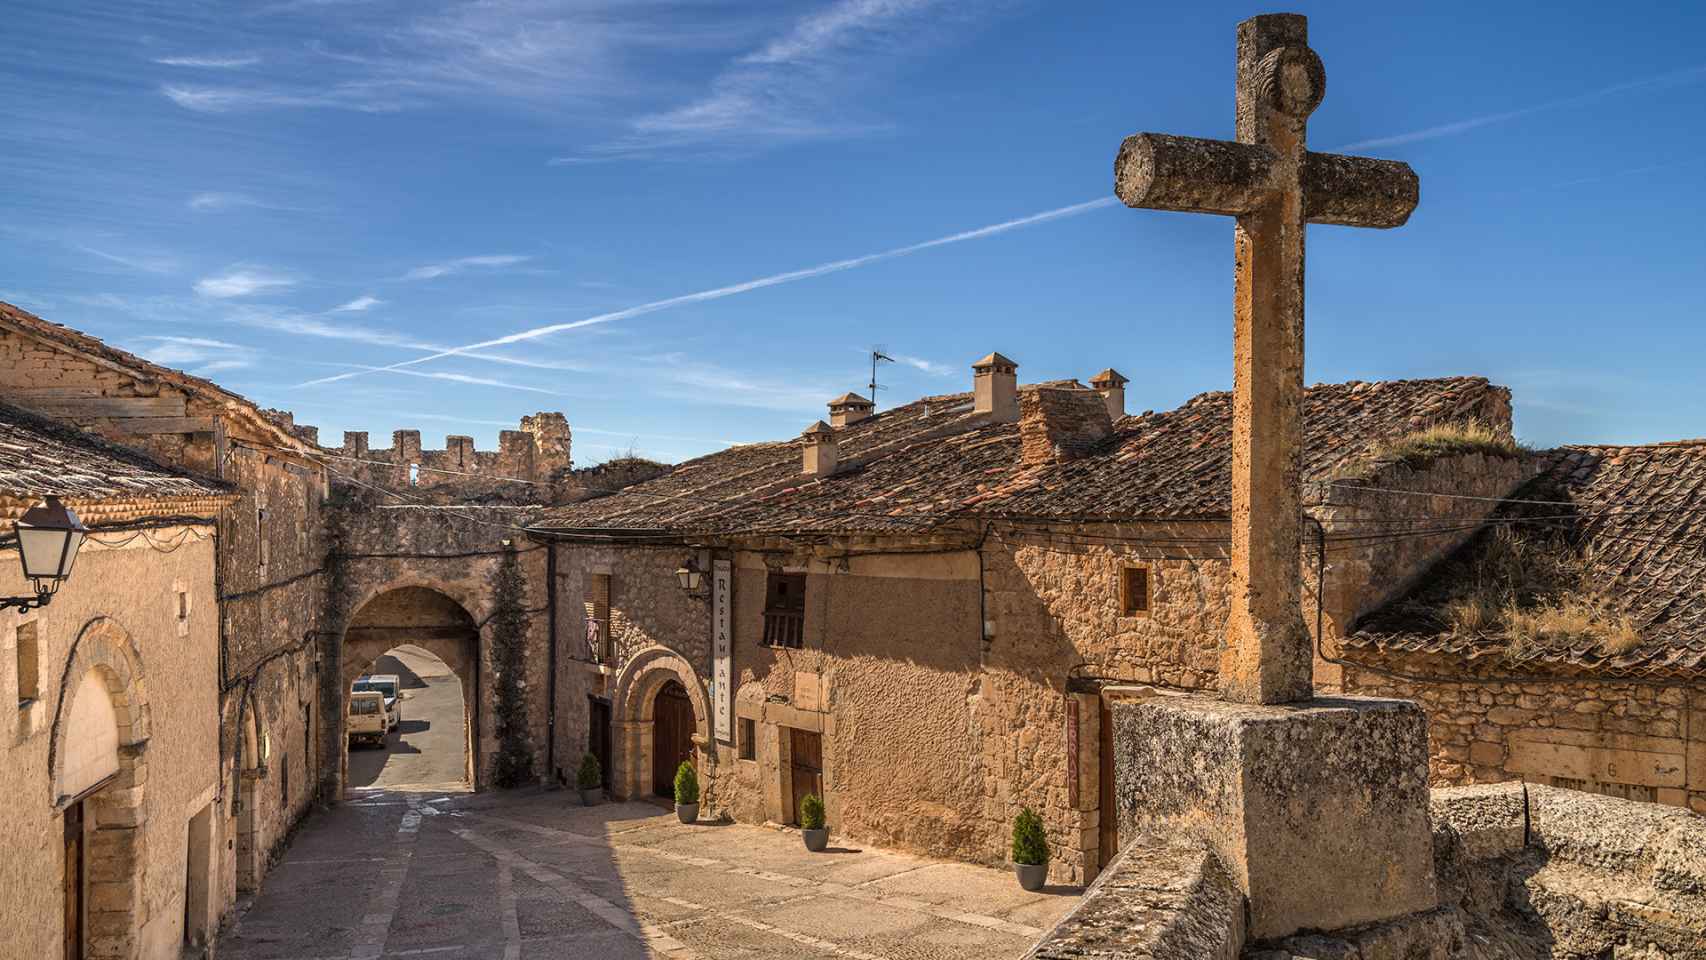 Maderuelo (Segovia)